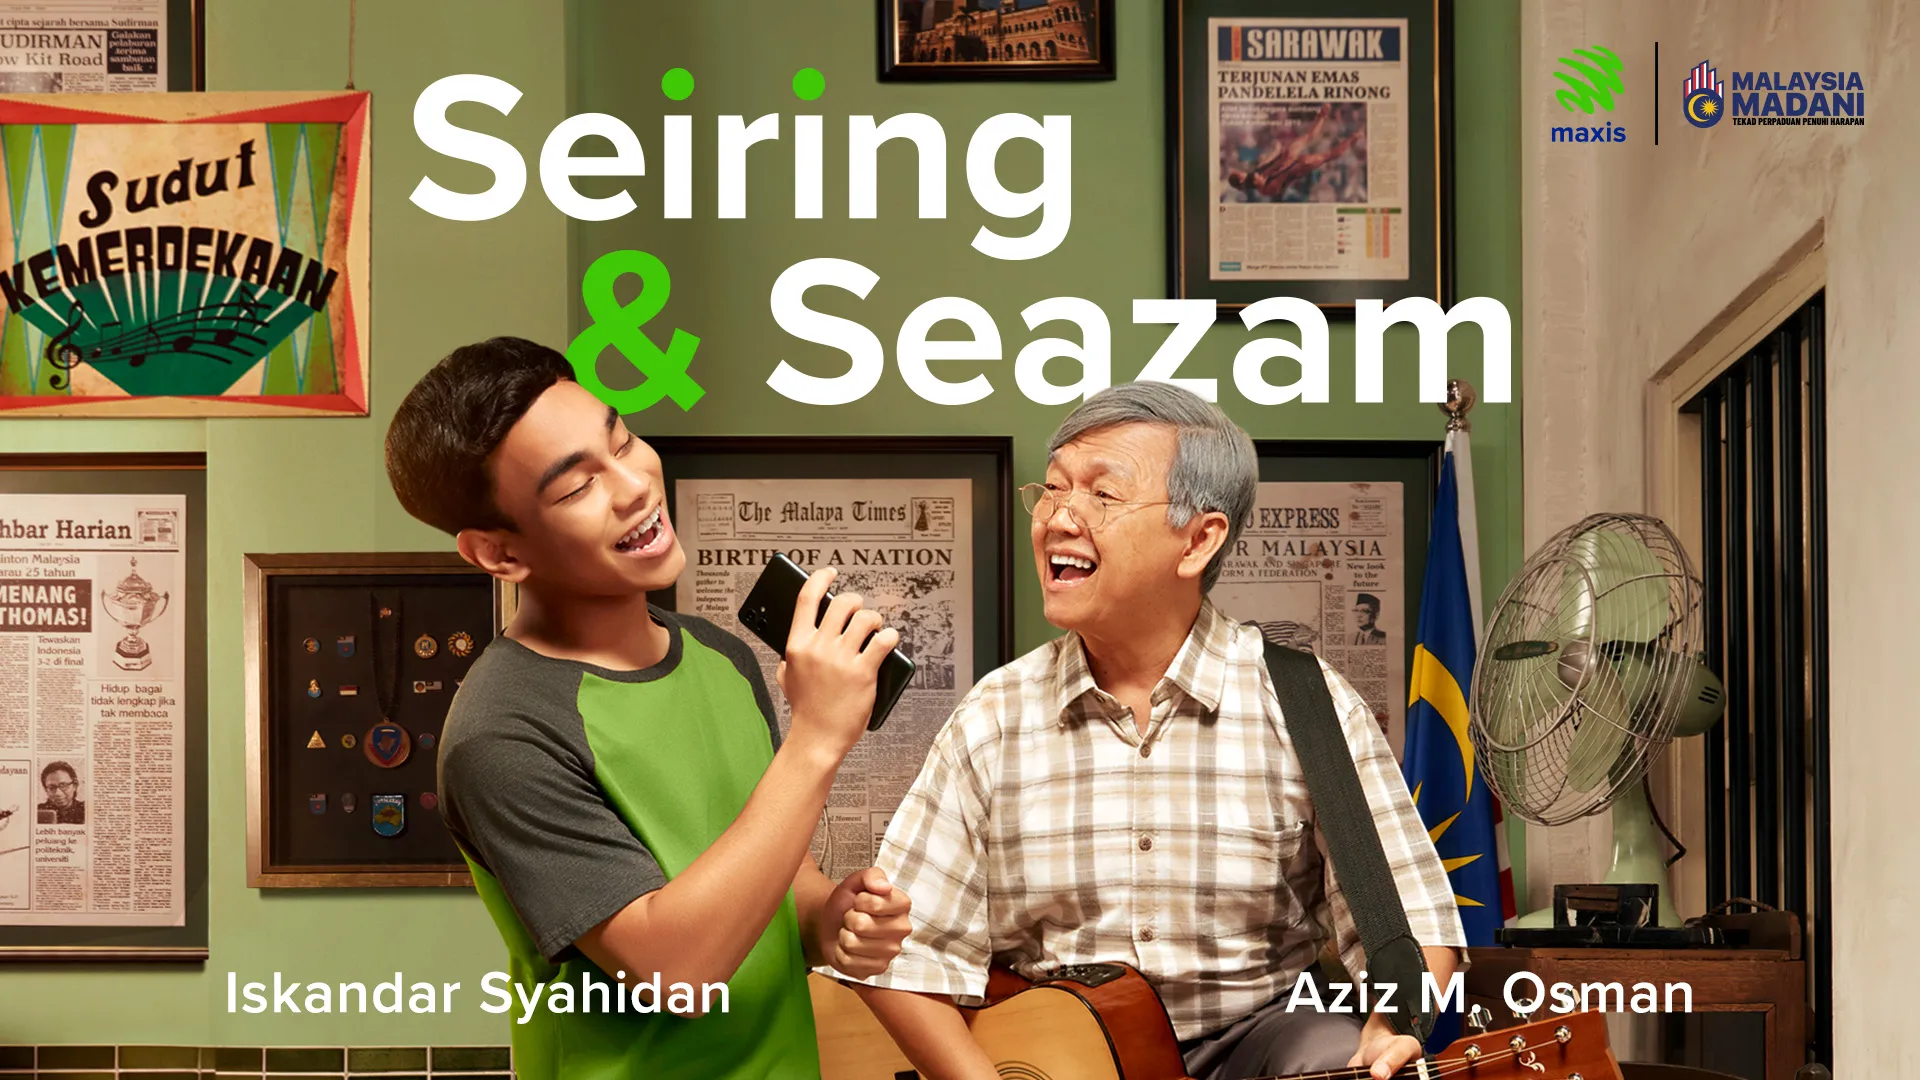 Seiring & Seazam